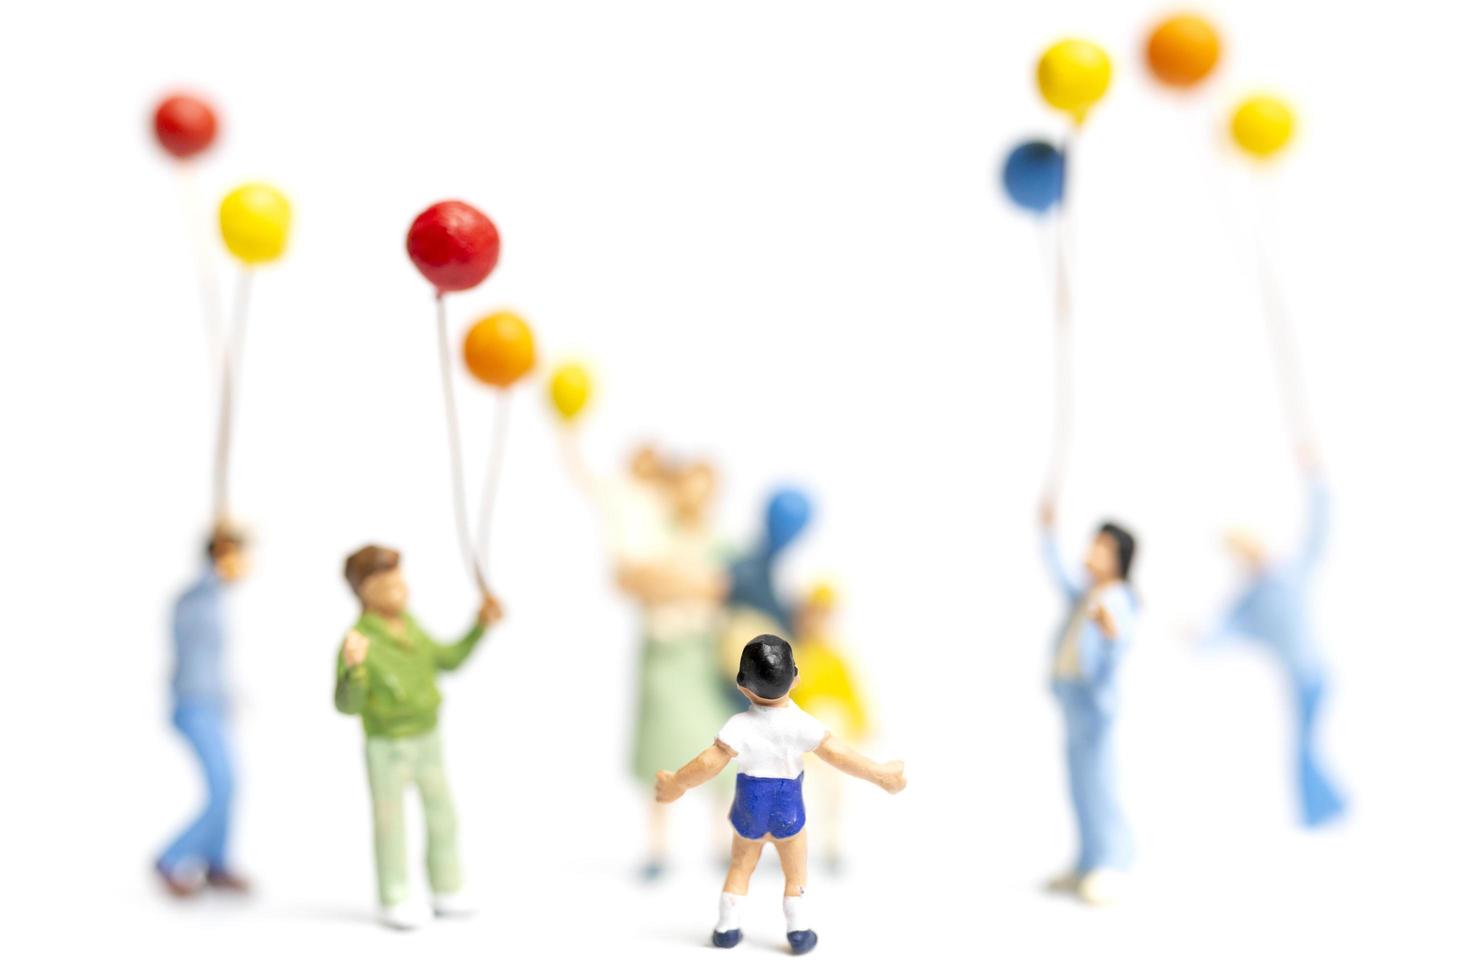 Miniaturkinder, die Luftballons auf einem weißen Hintergrund halten foto